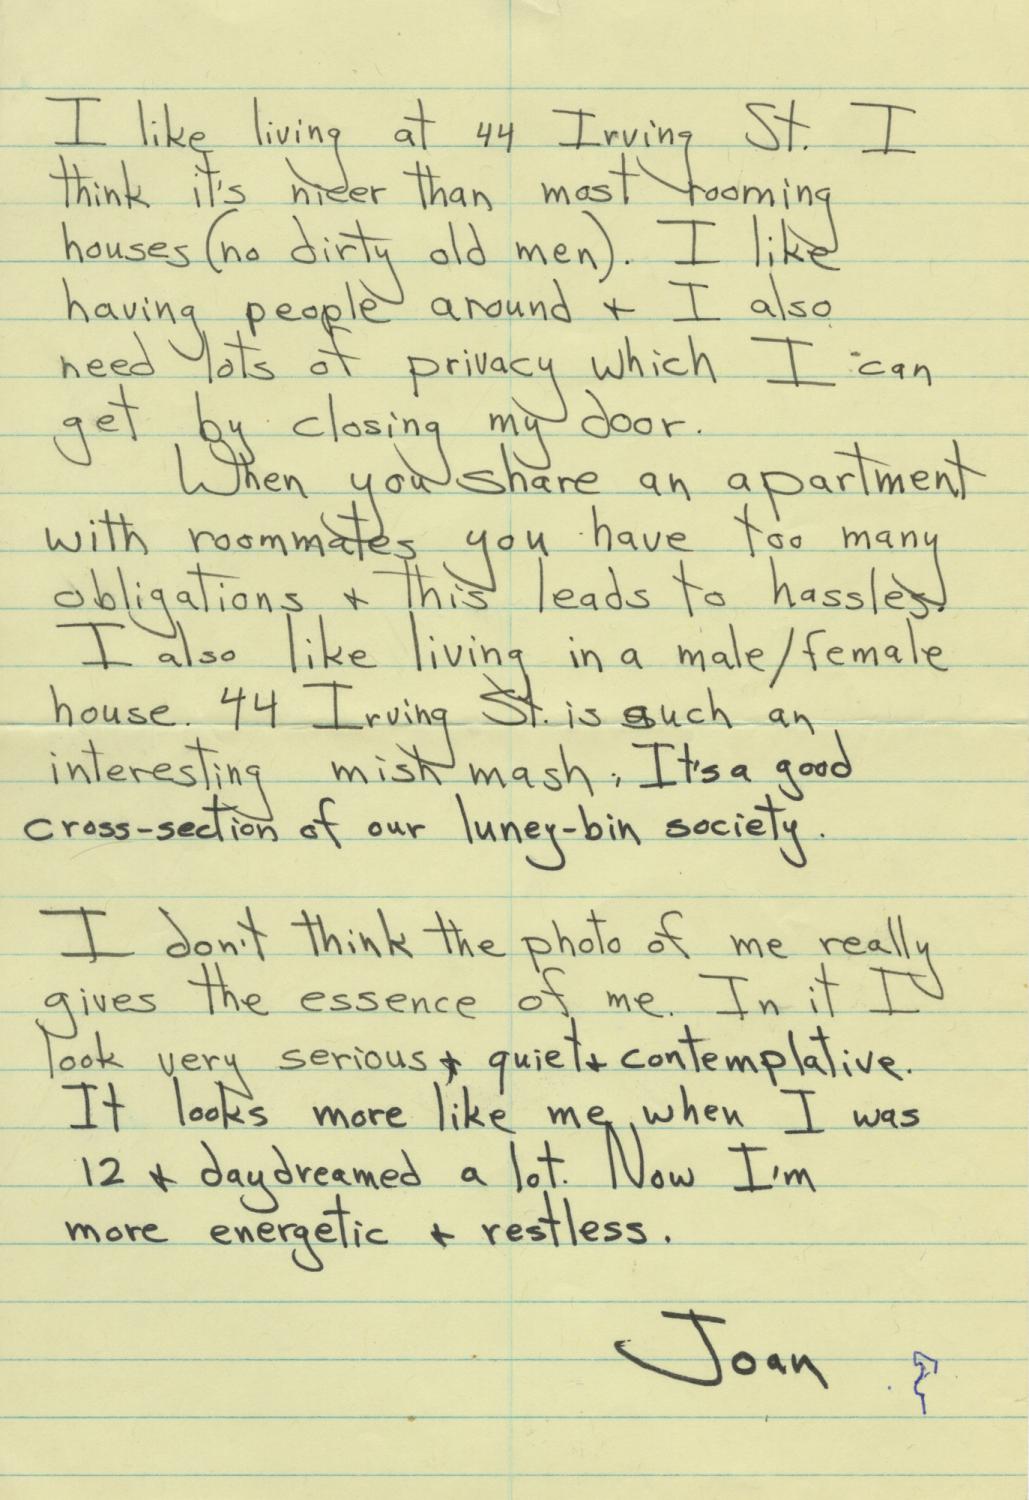 44 Irving Street - Joan's Letter. 44 Irving Street, Cambridge, MA. 1971.